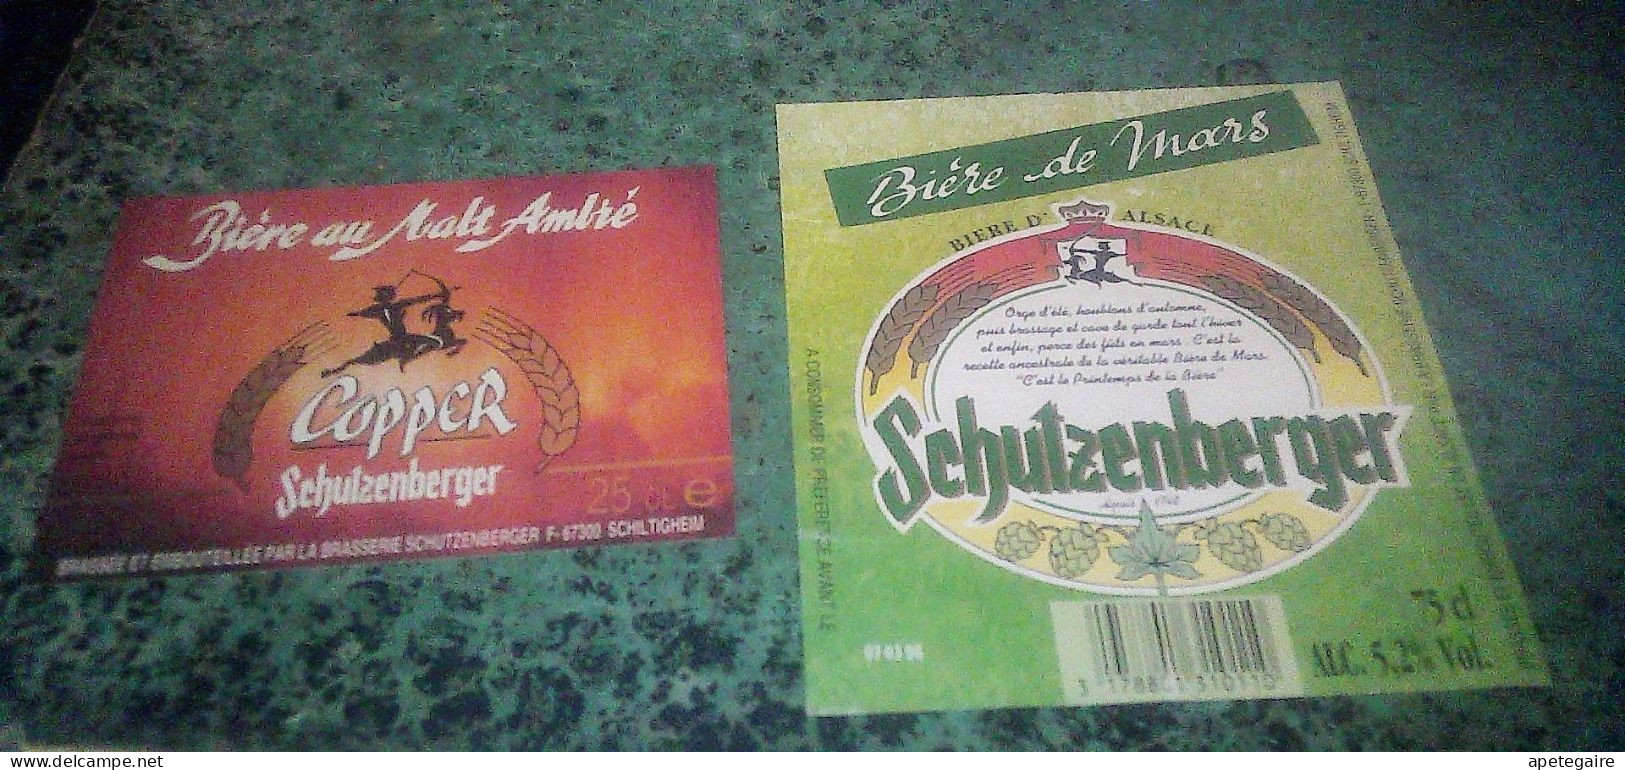 Schiltigheim Anciennes Etiquettes De Bière D'Alsace  Lot De 2 Différentes Brasserie Schutzenberger Coopet & De Mars - Bière